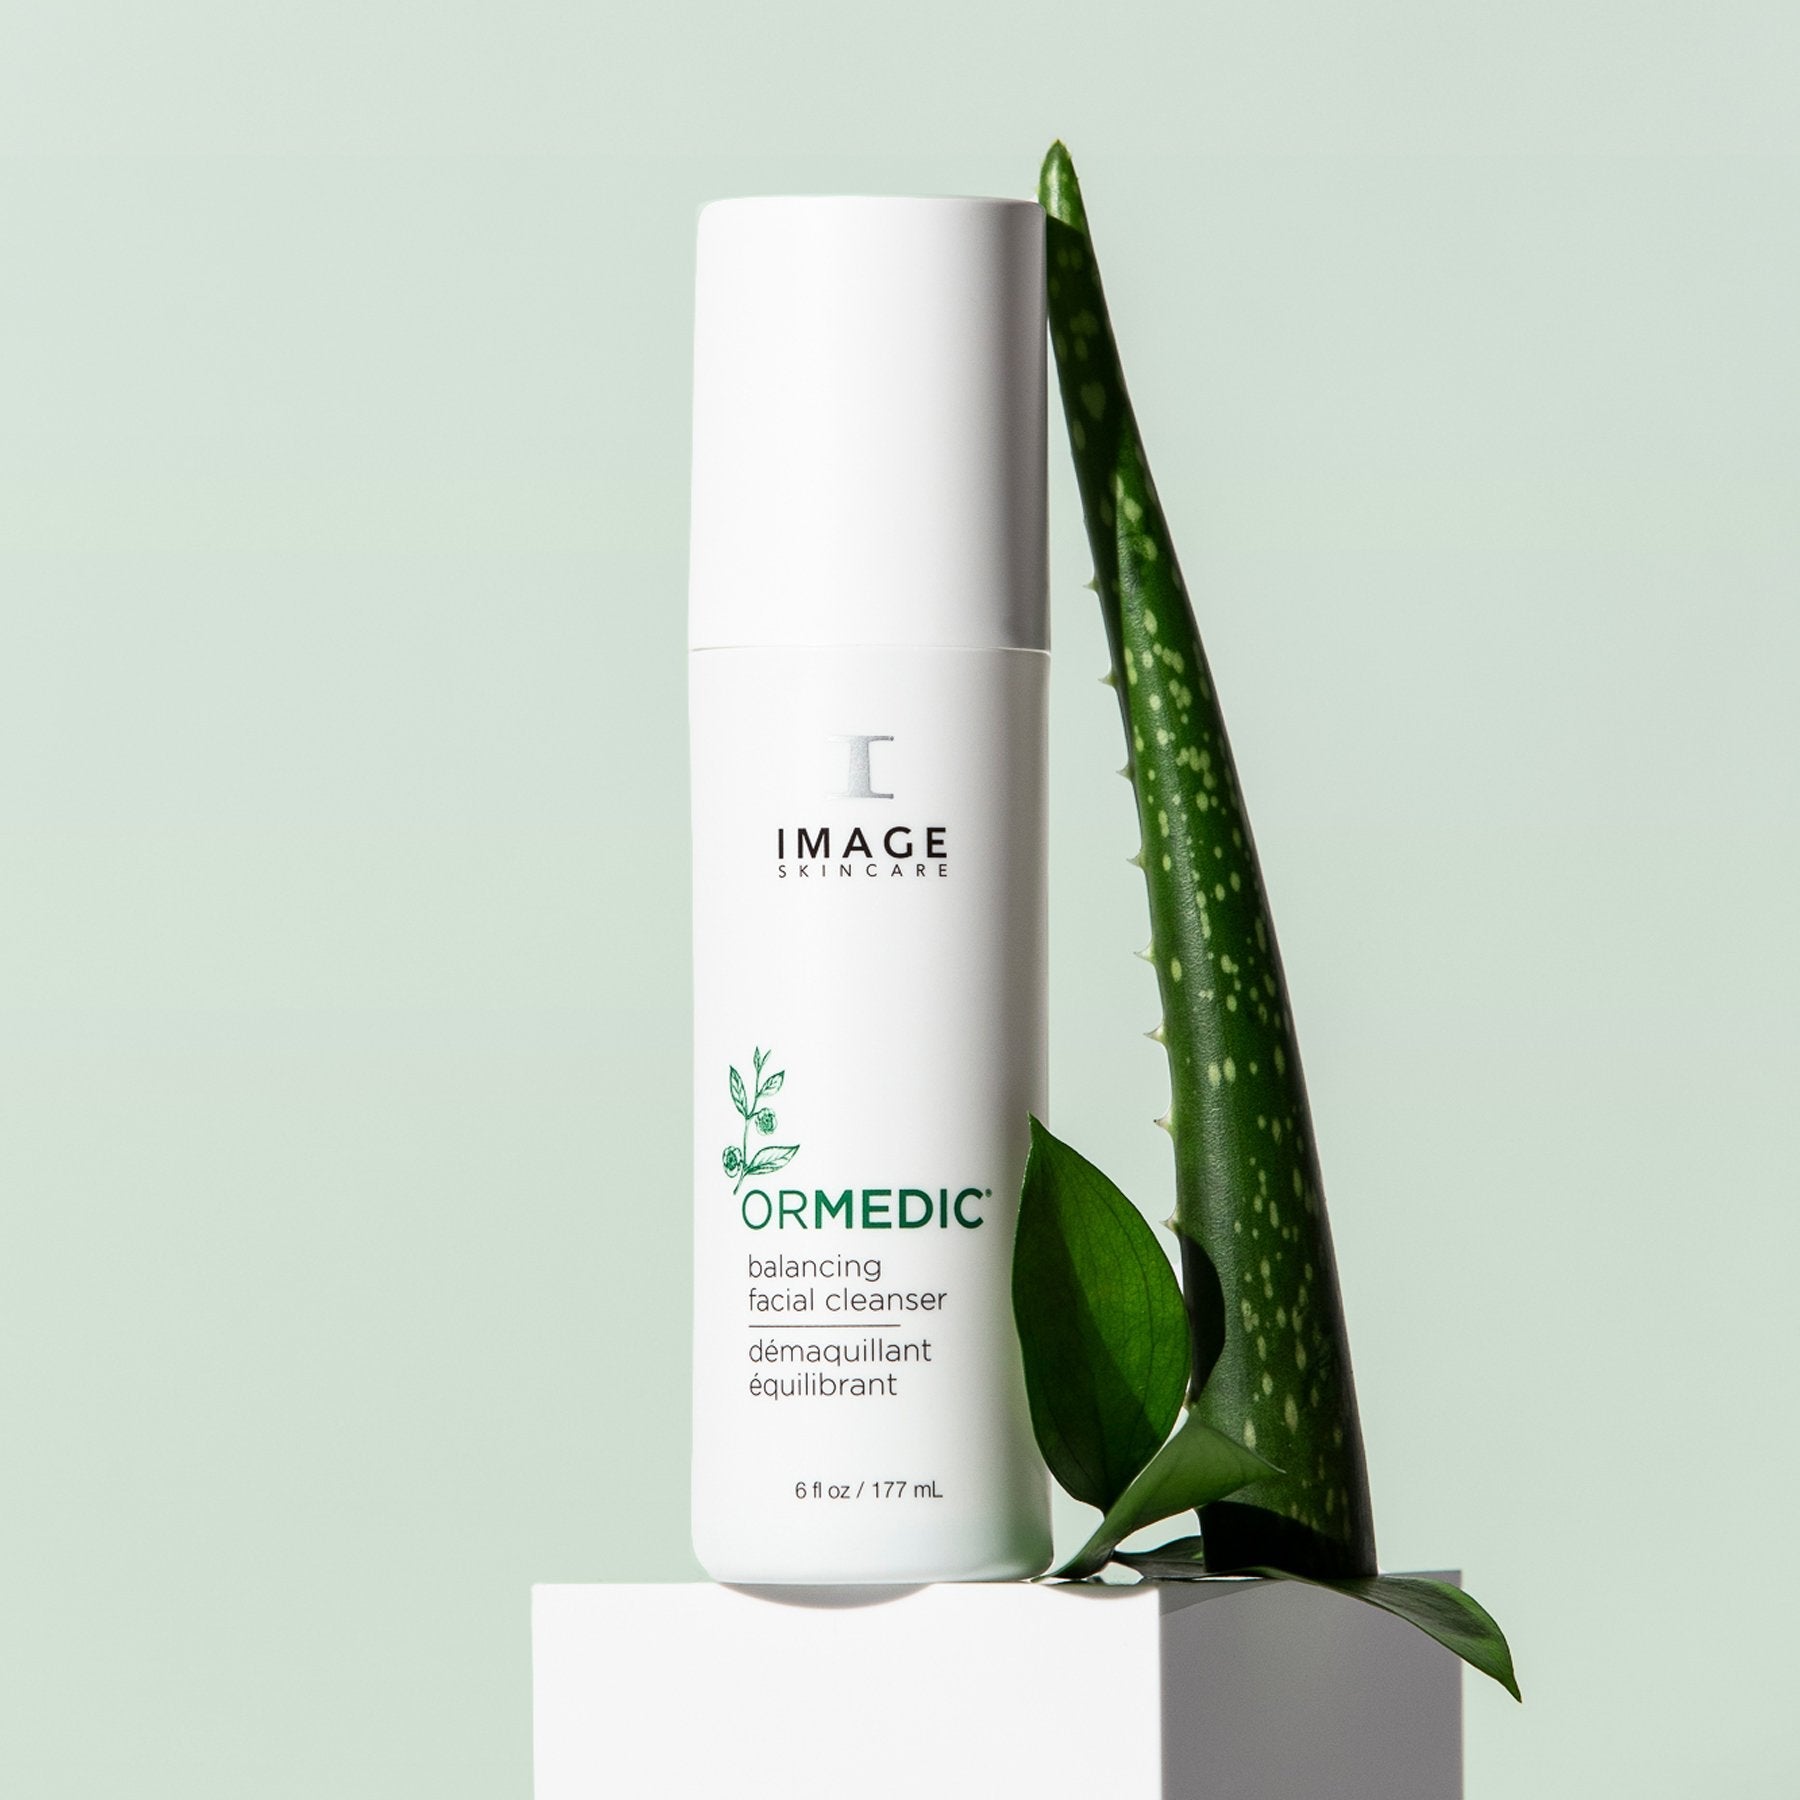 ORMEDIC® balancing facial cleanser | IMAGE Skincare